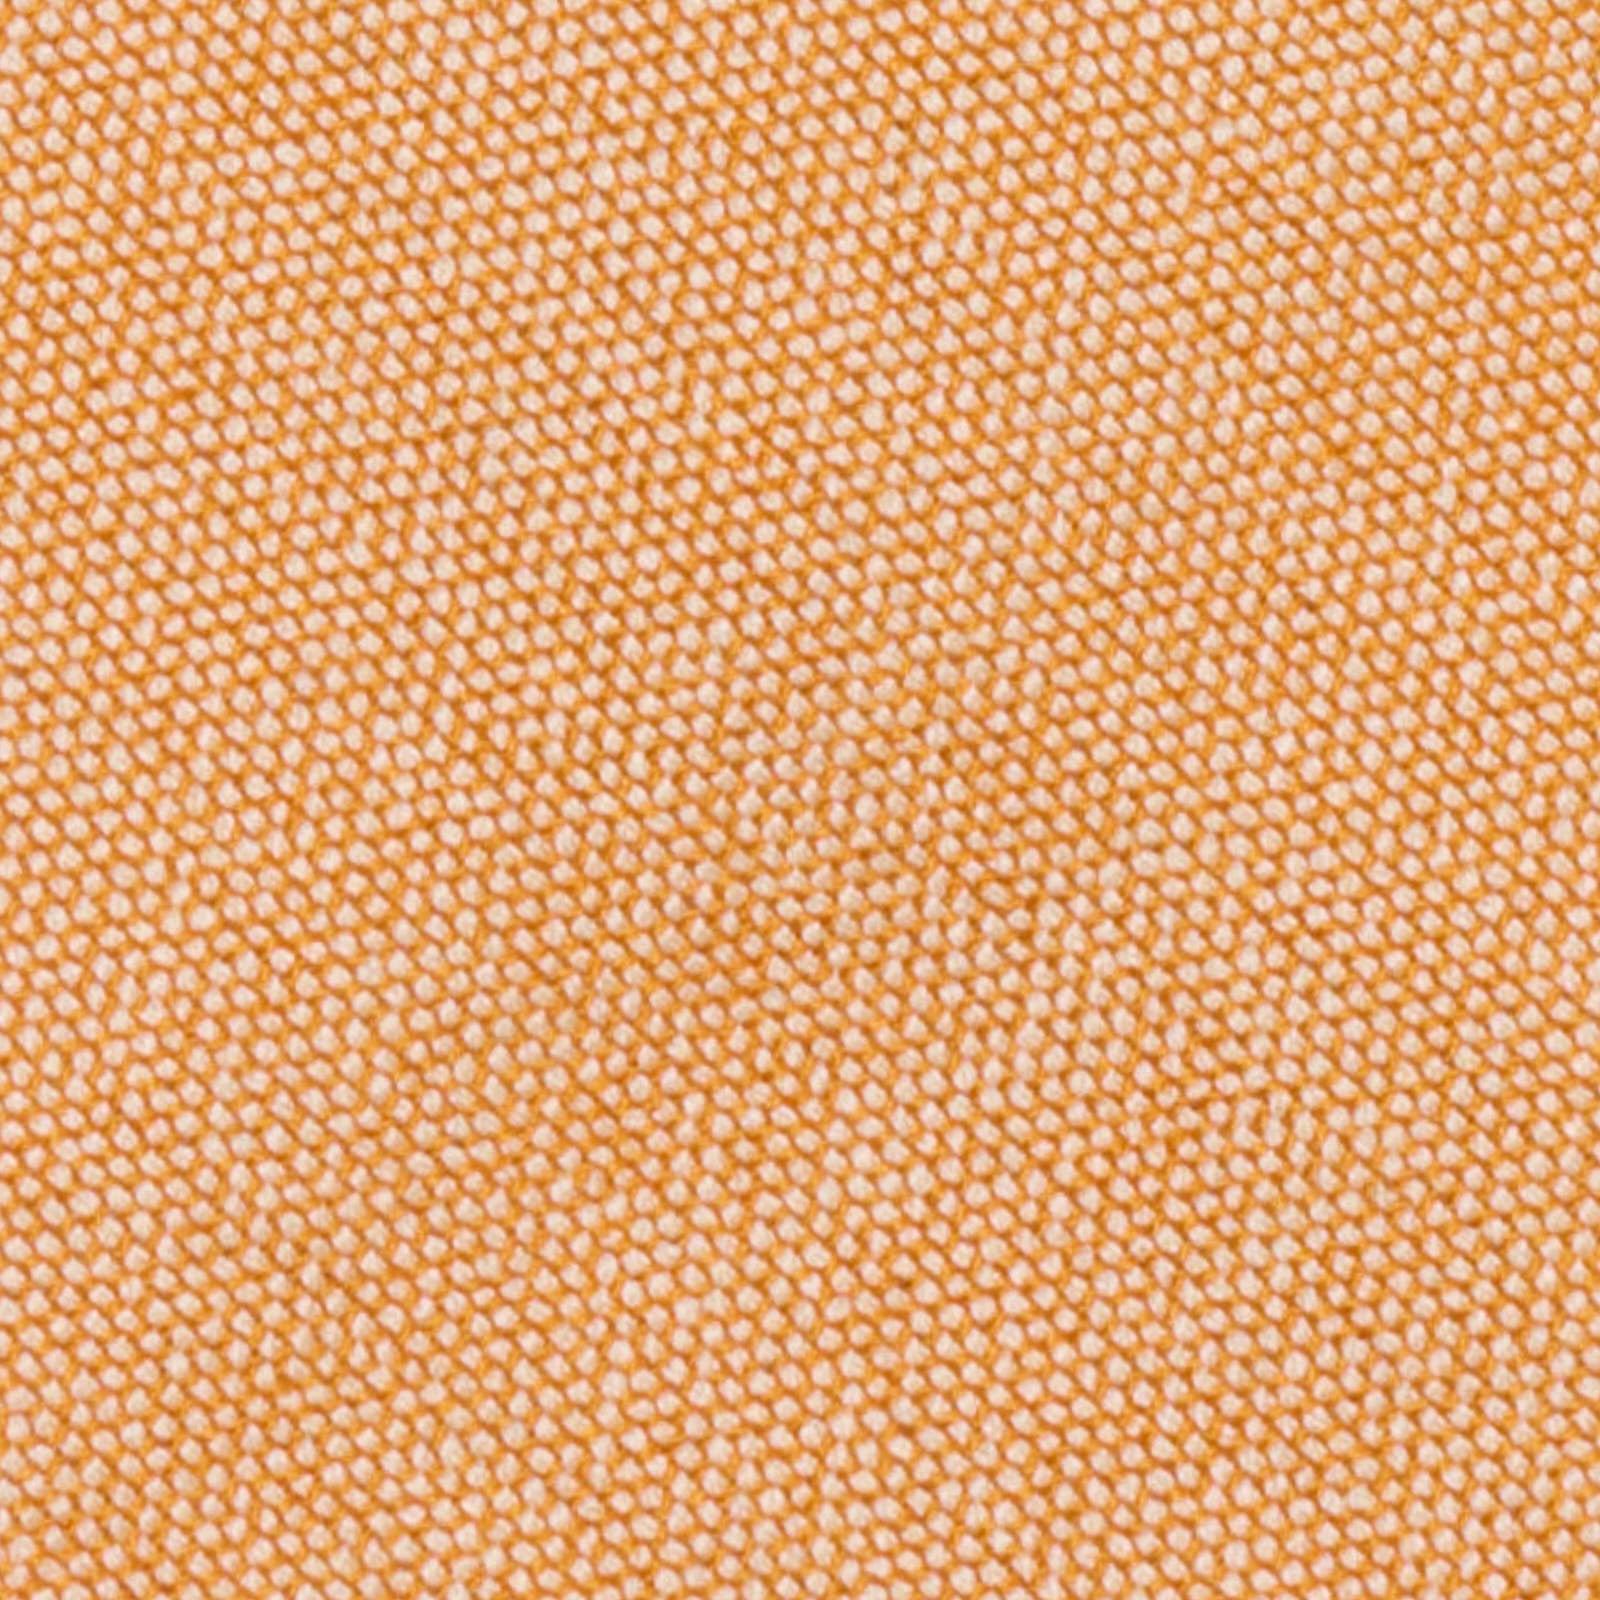 MATTABISCH for VANNUCCI Orange Birdseye Silk Tie NEW